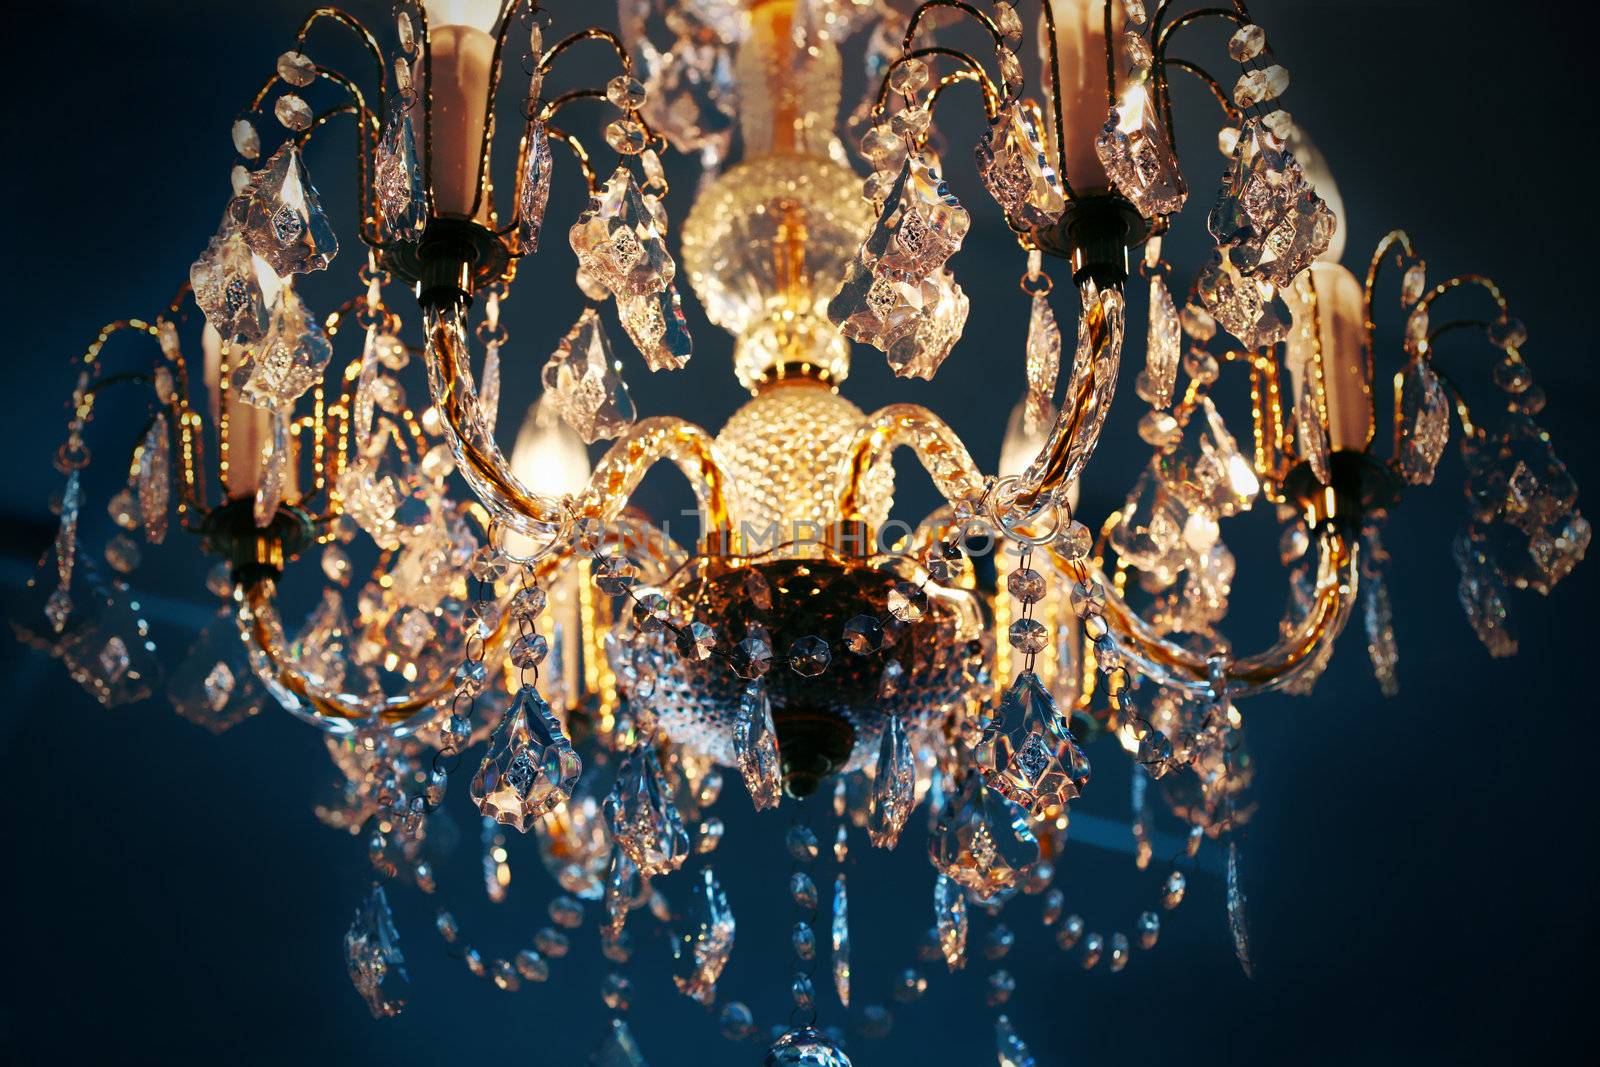 Crystal chandelier by jarenwicklund